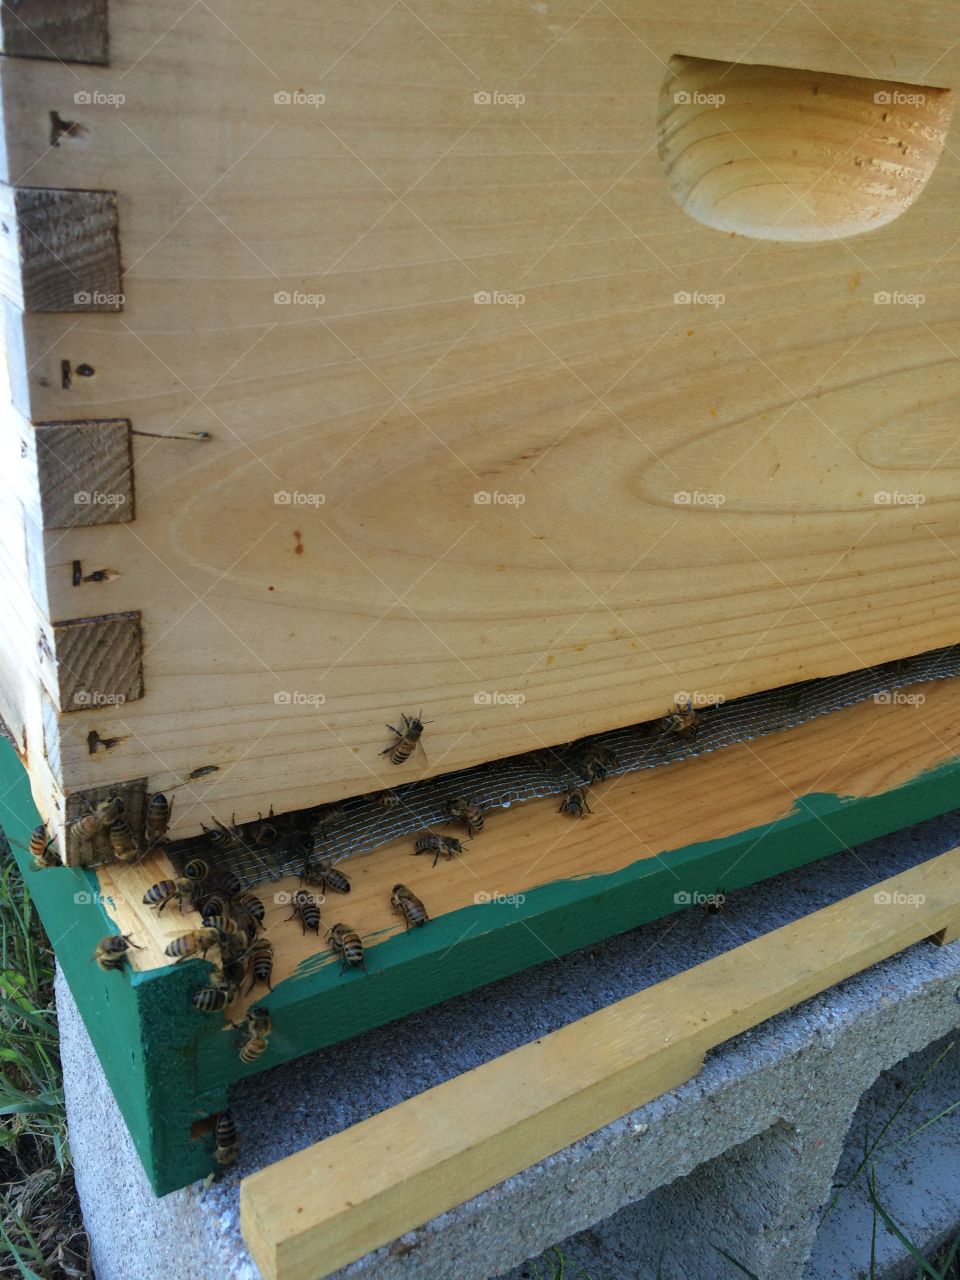 Bees honeybees